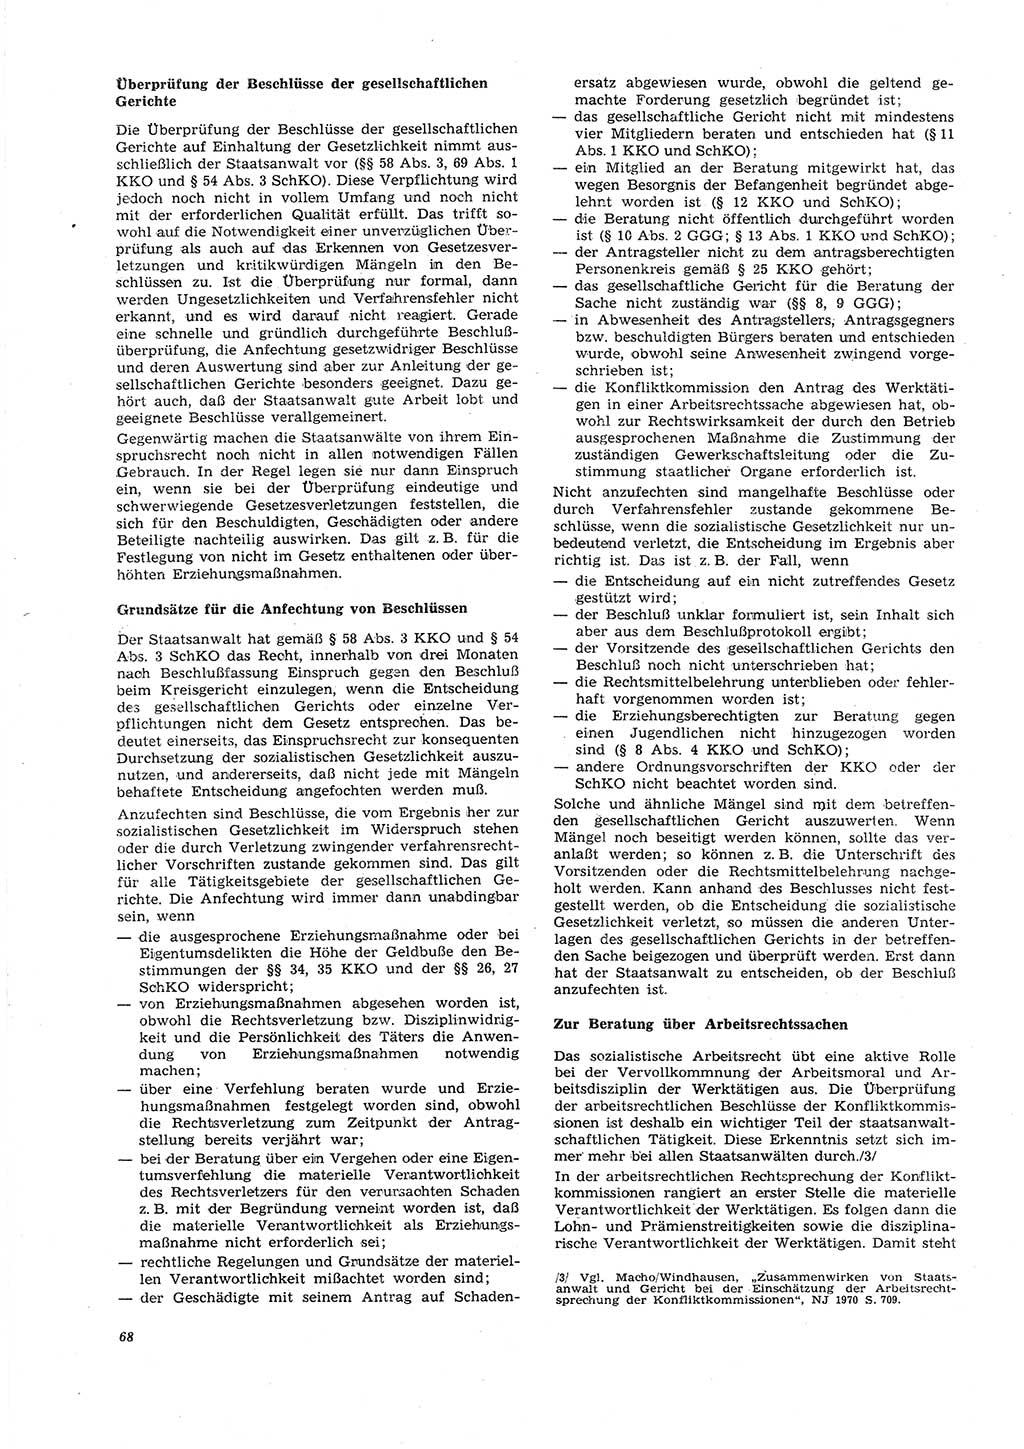 Neue Justiz (NJ), Zeitschrift für Recht und Rechtswissenschaft [Deutsche Demokratische Republik (DDR)], 26. Jahrgang 1972, Seite 68 (NJ DDR 1972, S. 68)